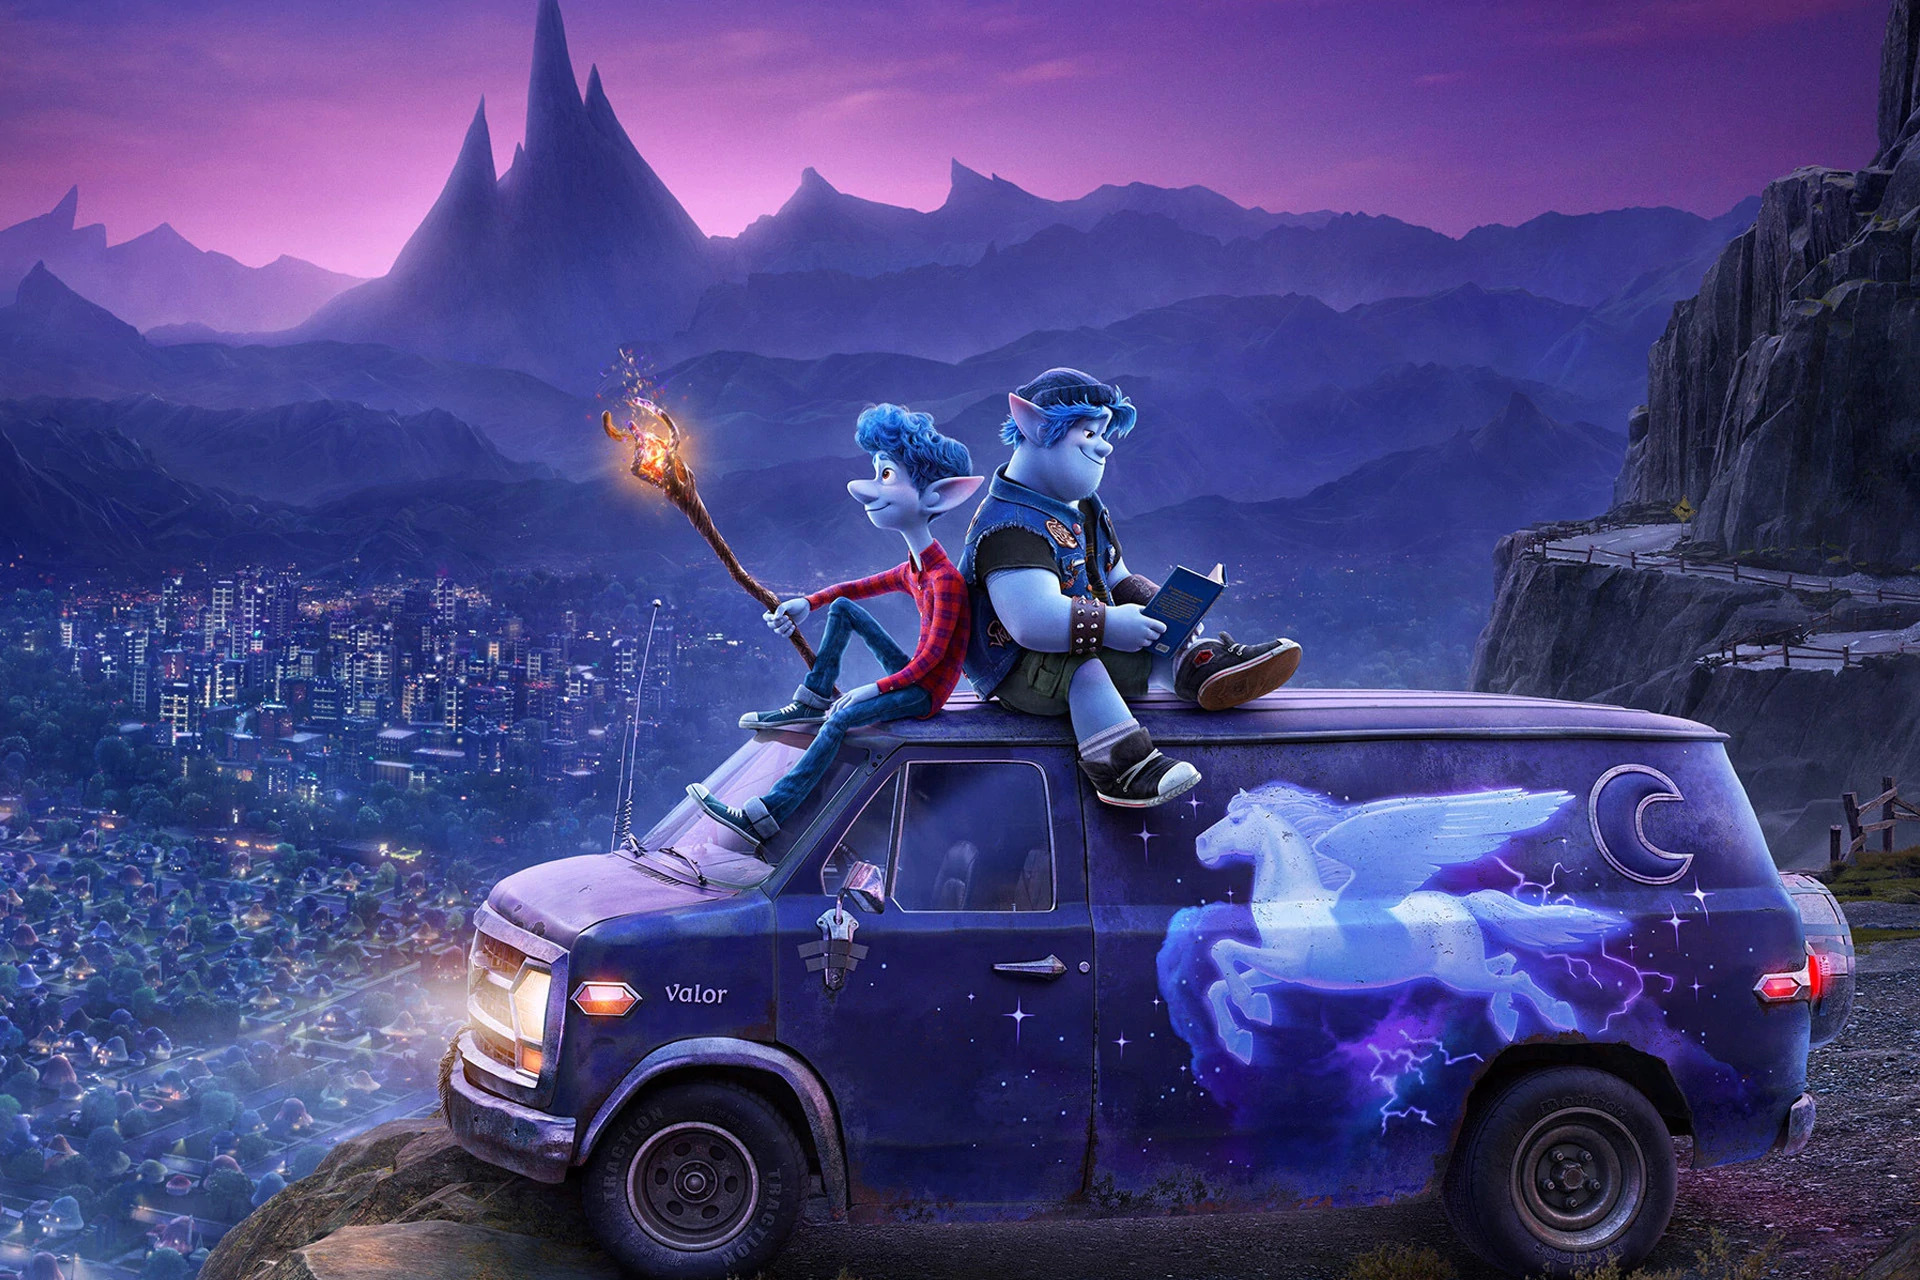 Вышел новый трейлер мультфильма «Вперед» от Pixar